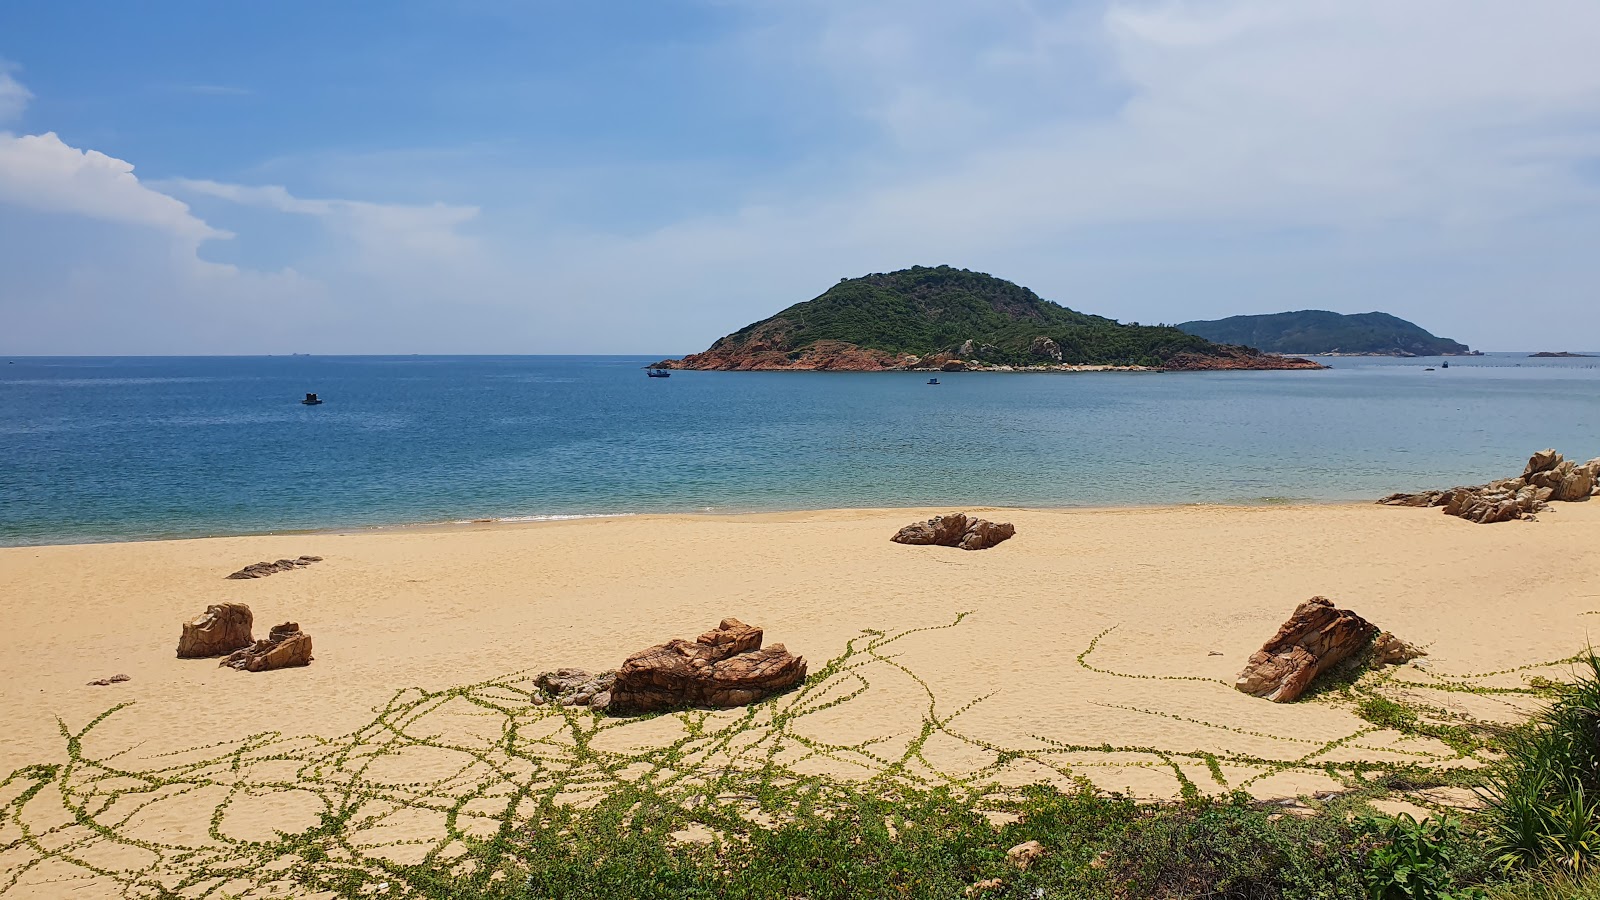 Foto af Bai Xep Beach - populært sted blandt afslapningskendere